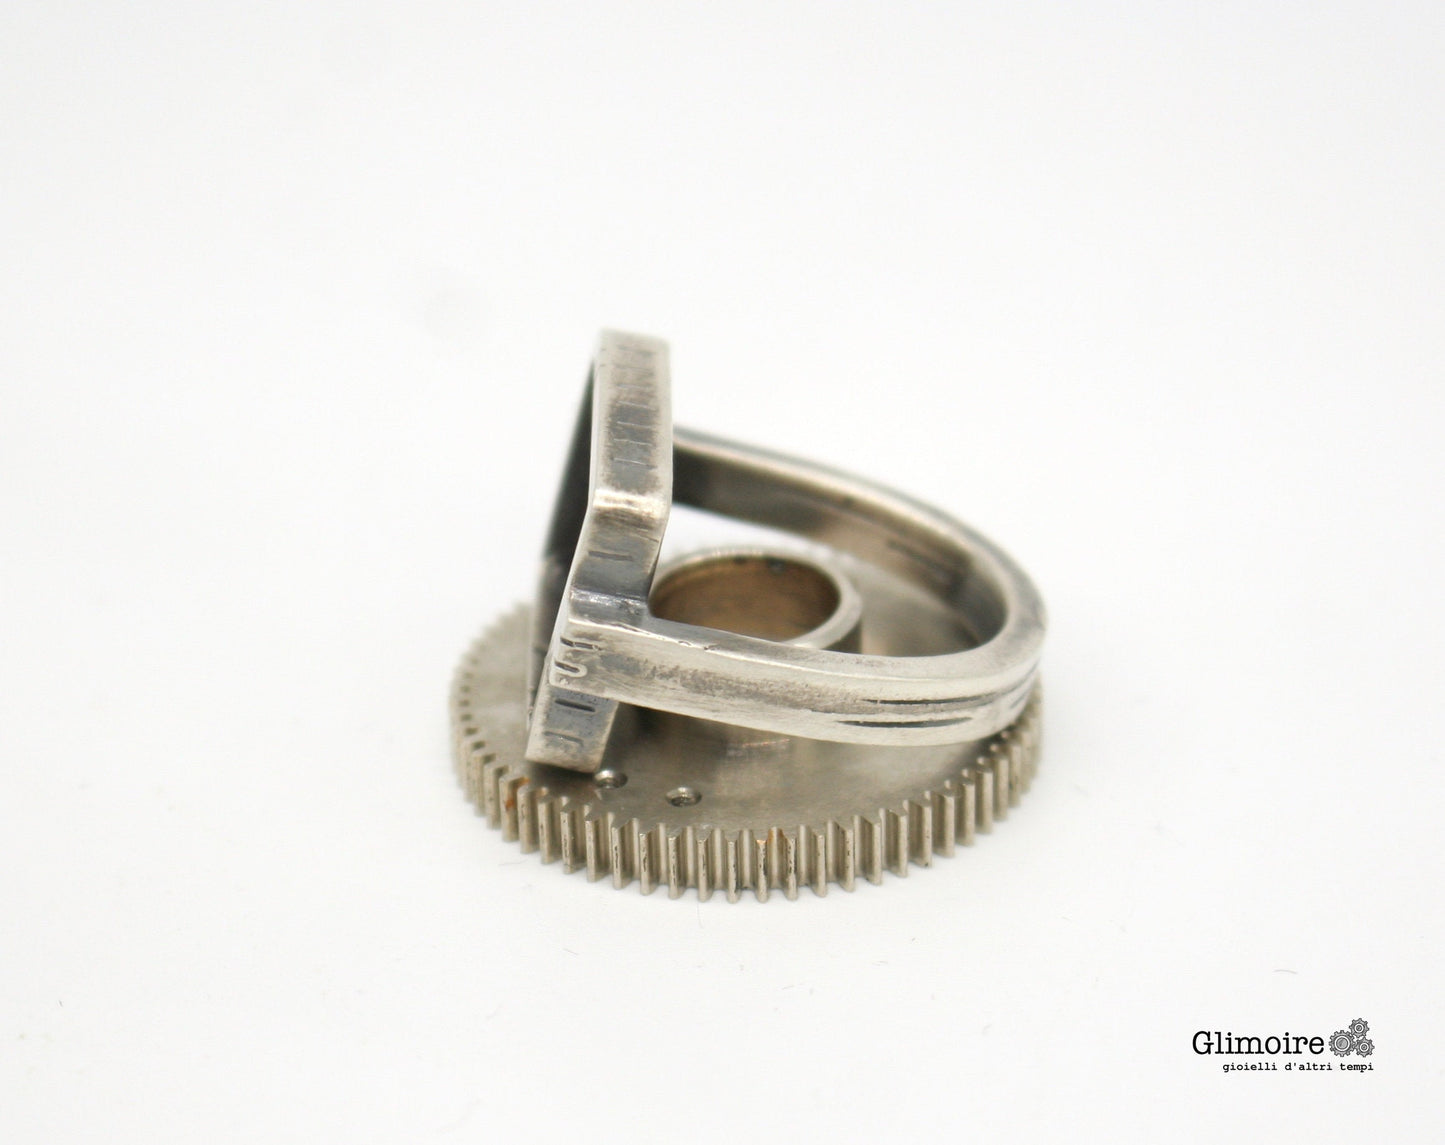 Anello industrial rettangolare- forze e attrito - anello con ingranaggi art.313 - Glimoire